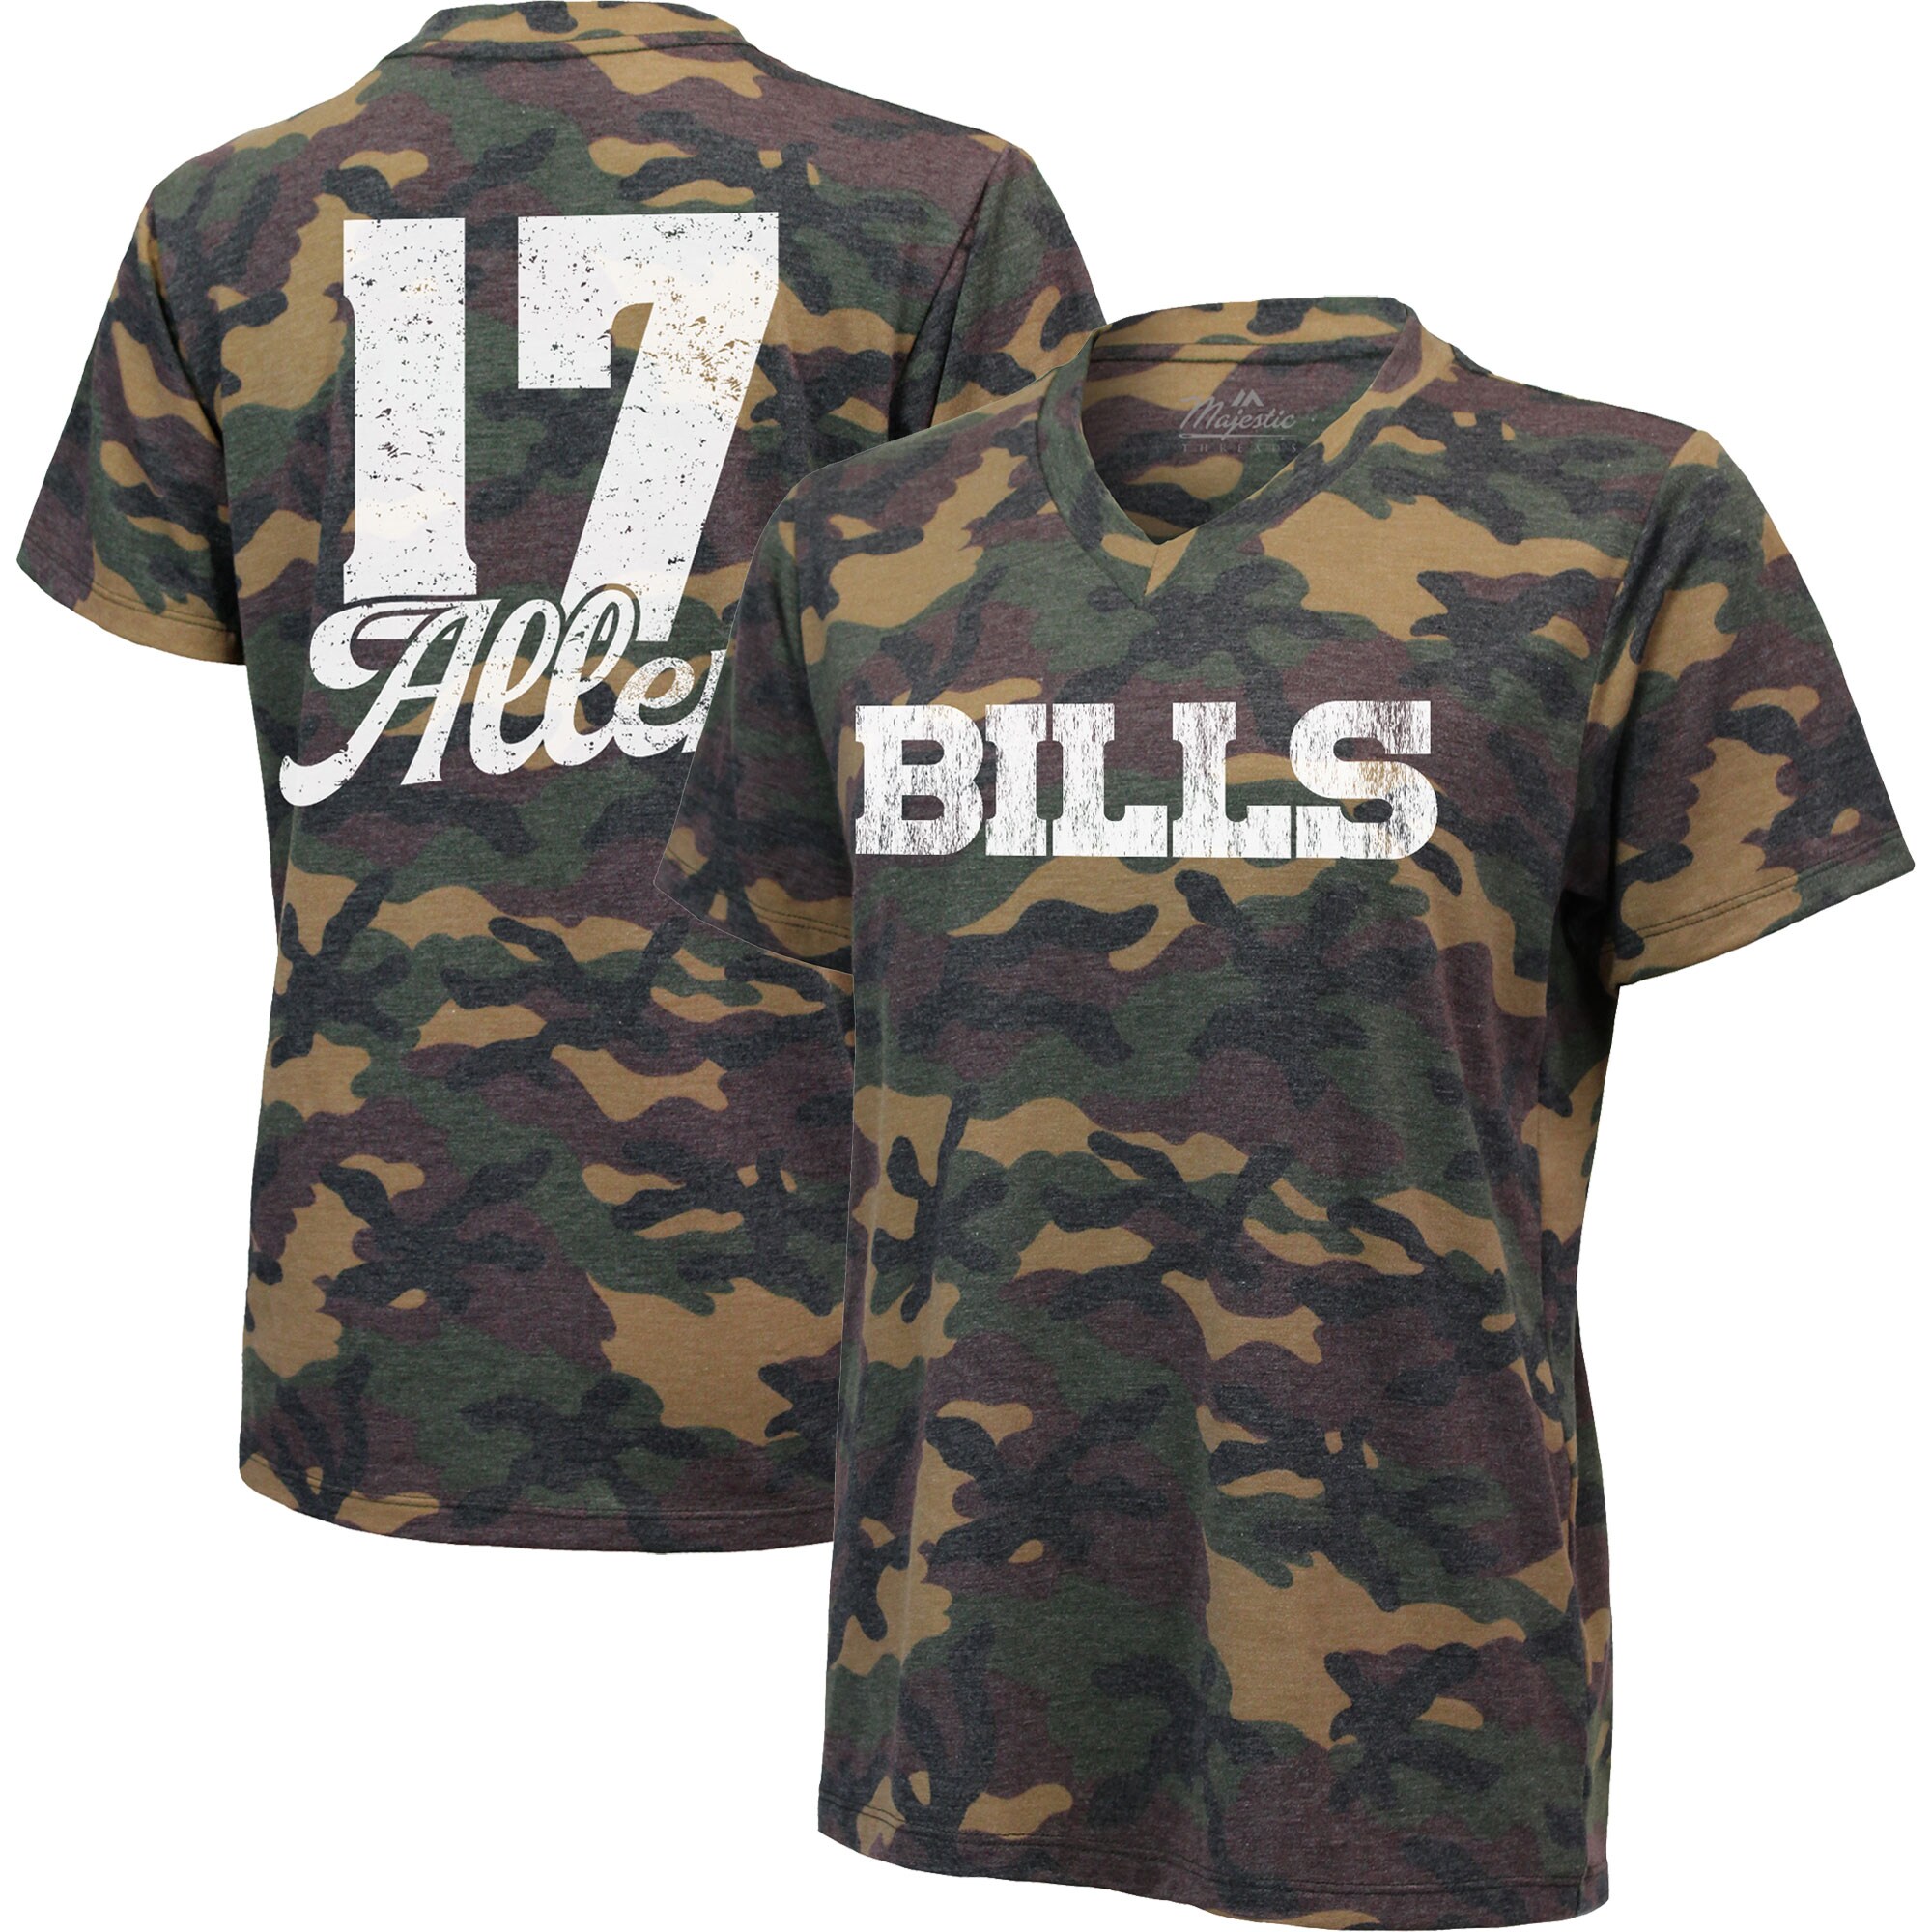 buffalo bills military shirt